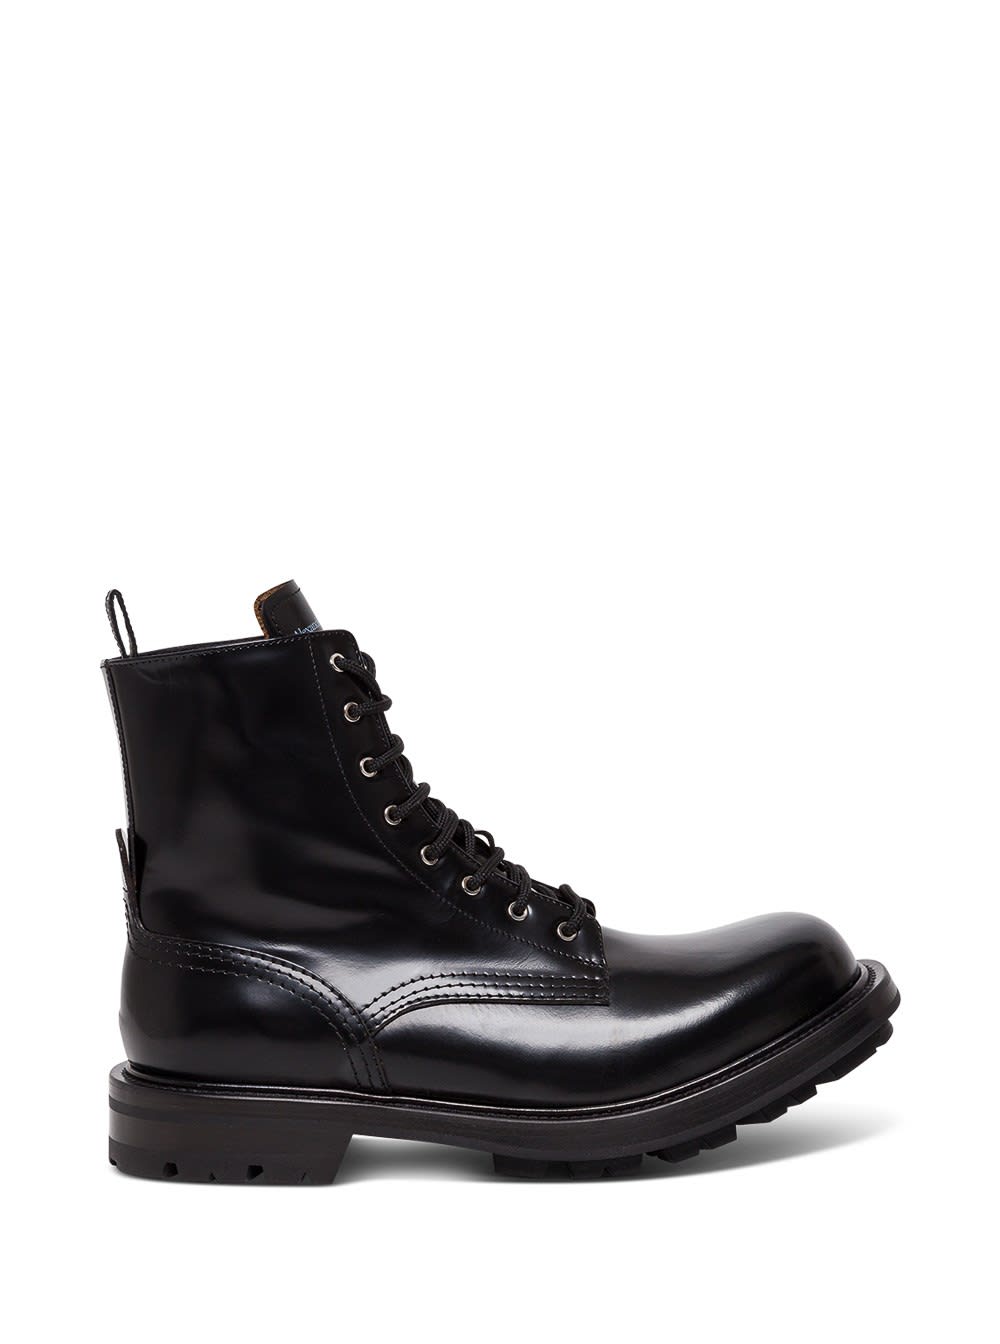 Alexander McQueen Worker Leather Boots